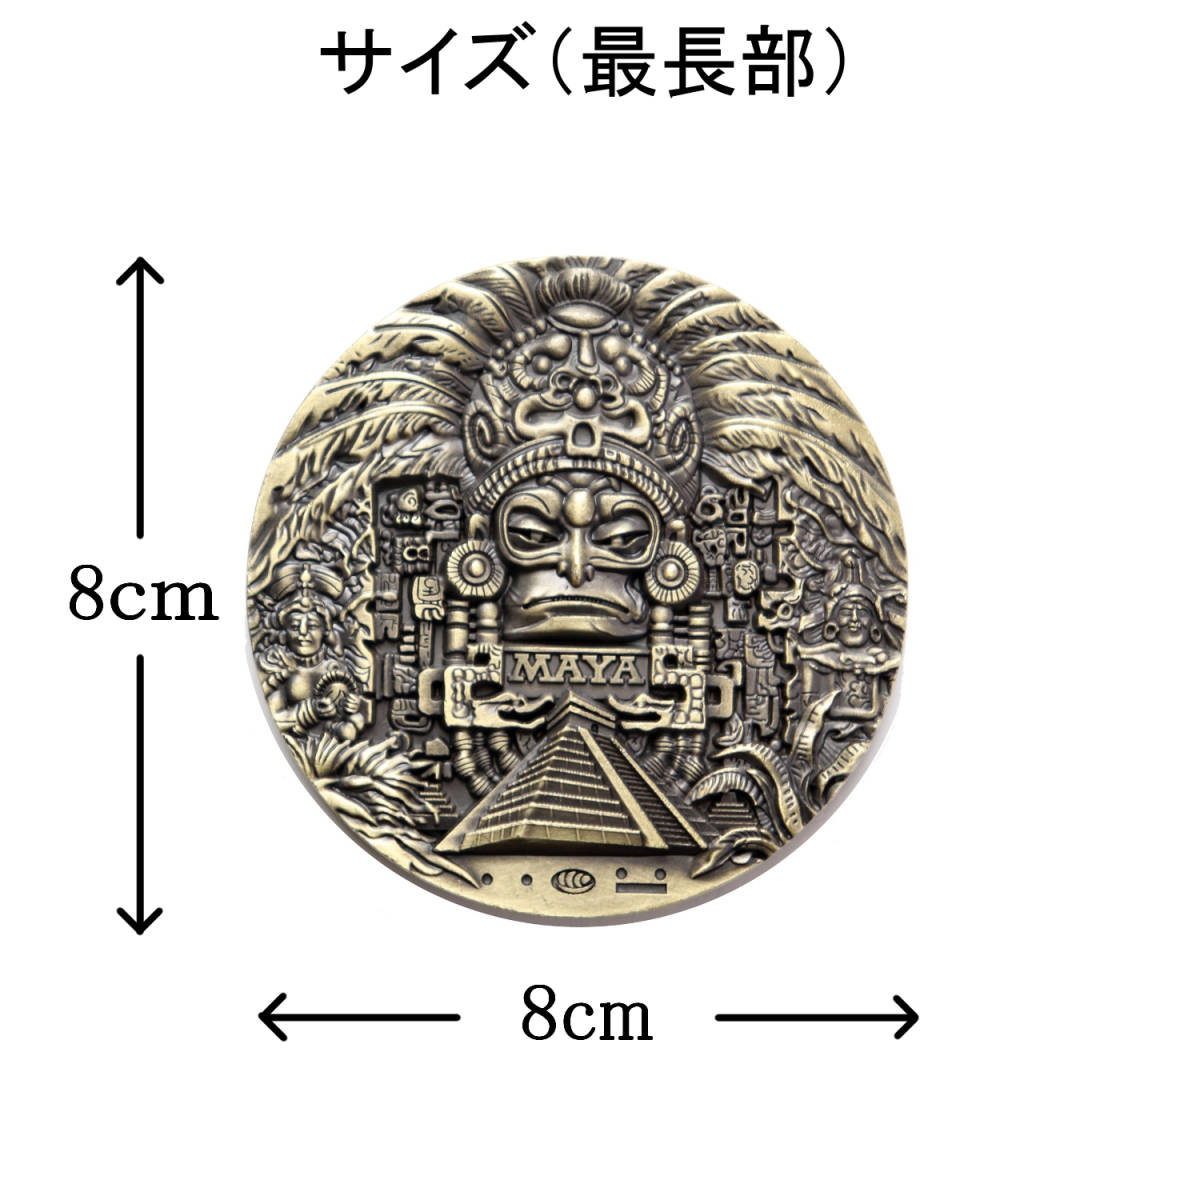 マヤ・アステカ文明 コイン マヤ暦カレンダー コレクション 合金製 透明ケース入